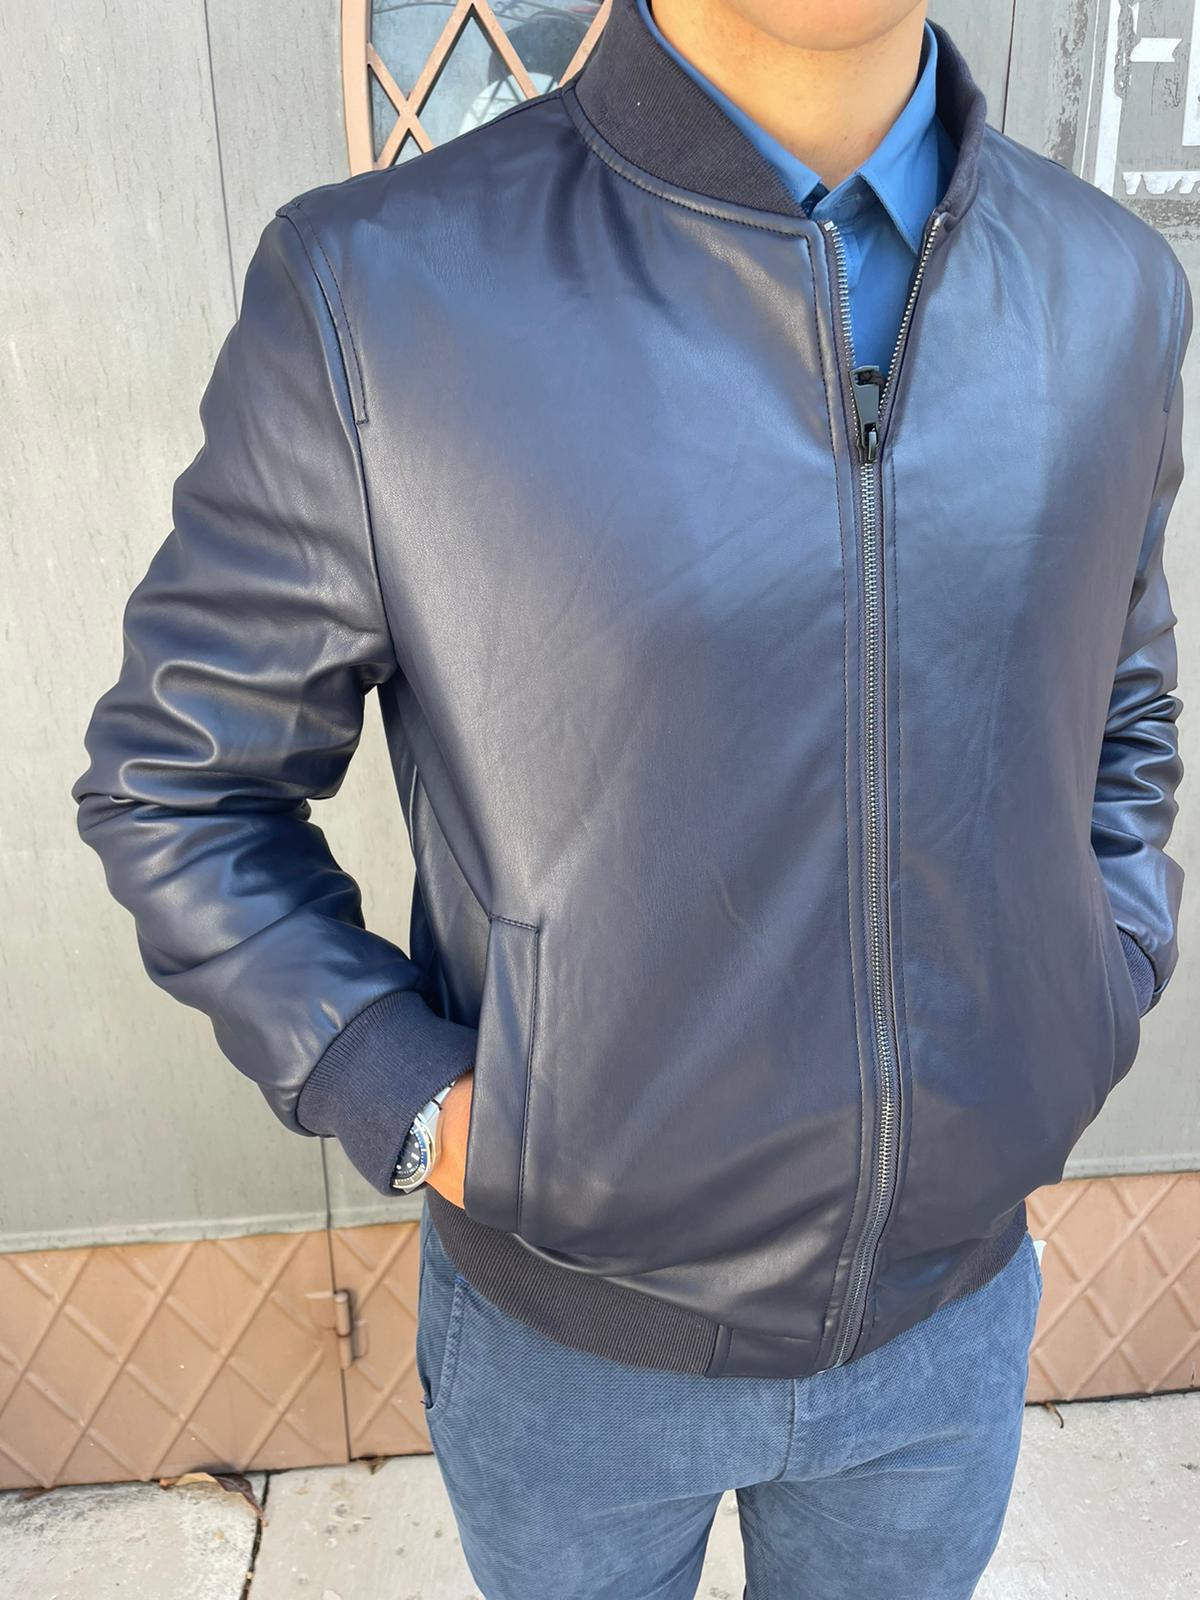 Men's eco leather bomber jacket